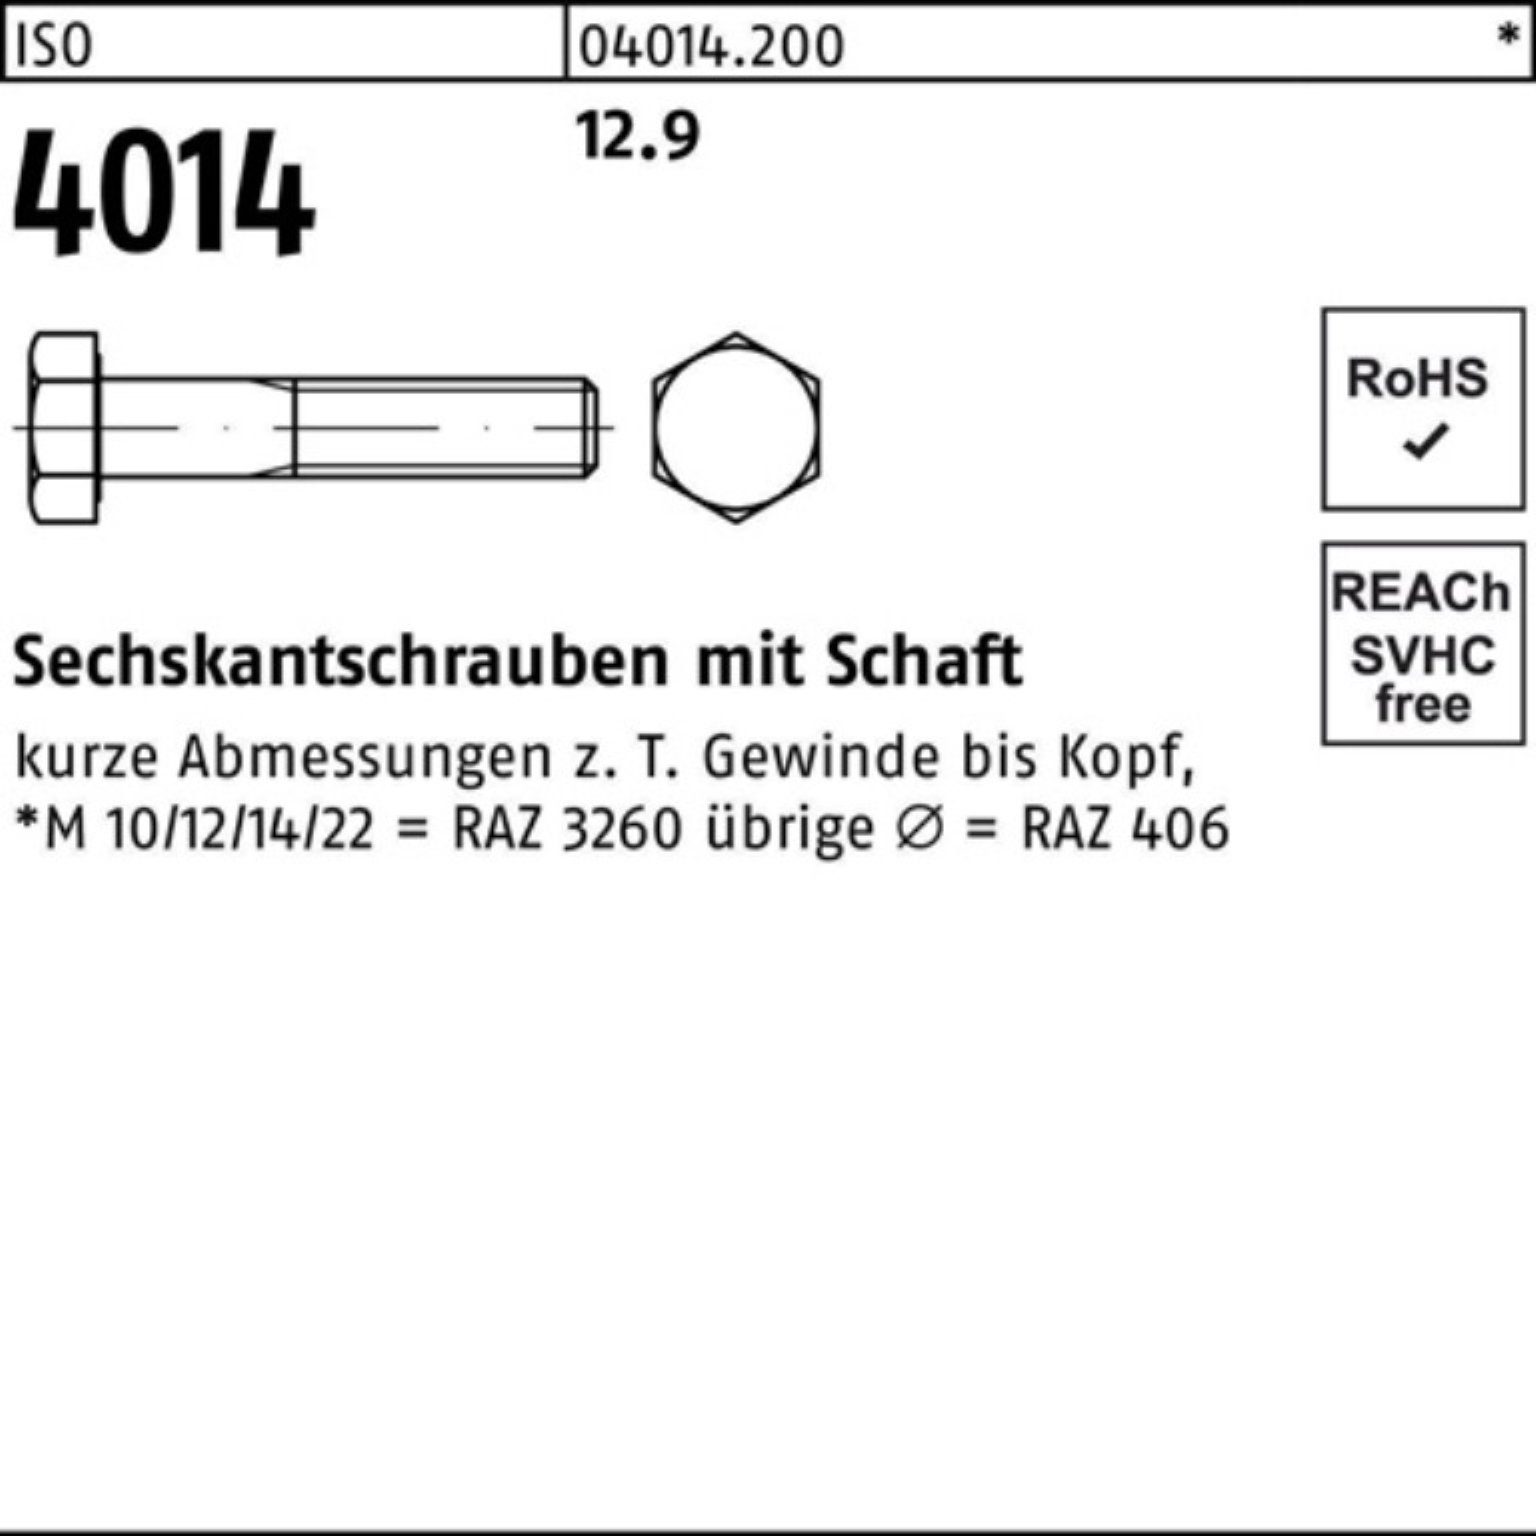 Bufab Sechskantschraube I Sechskantschraube 100er 4014 M24x Stück 10 130 Pack 12.9 Schaft ISO